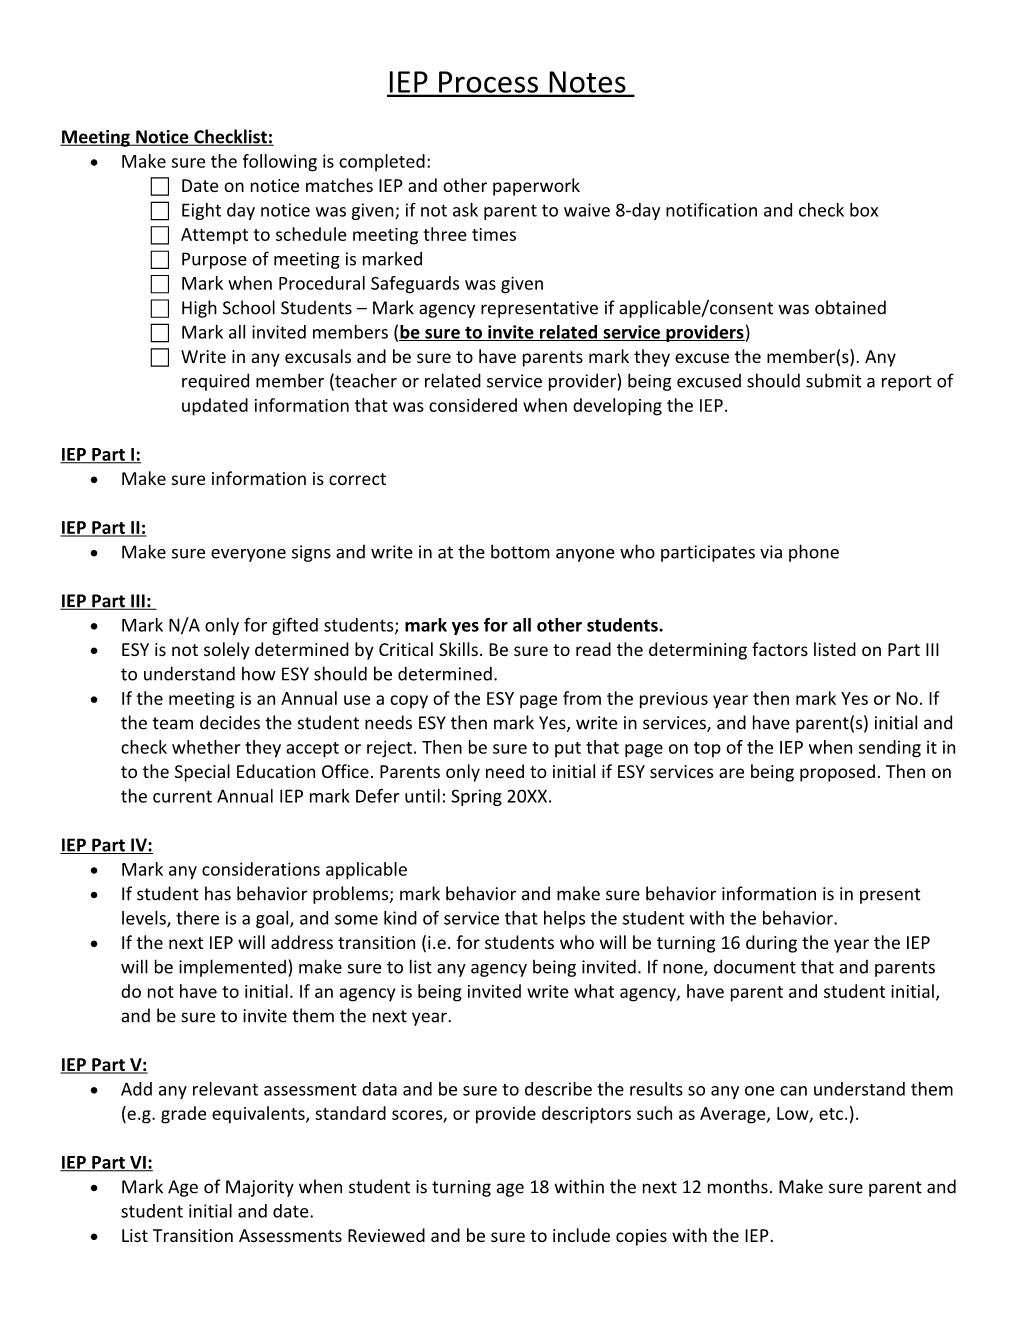 Meeting Notice Checklist